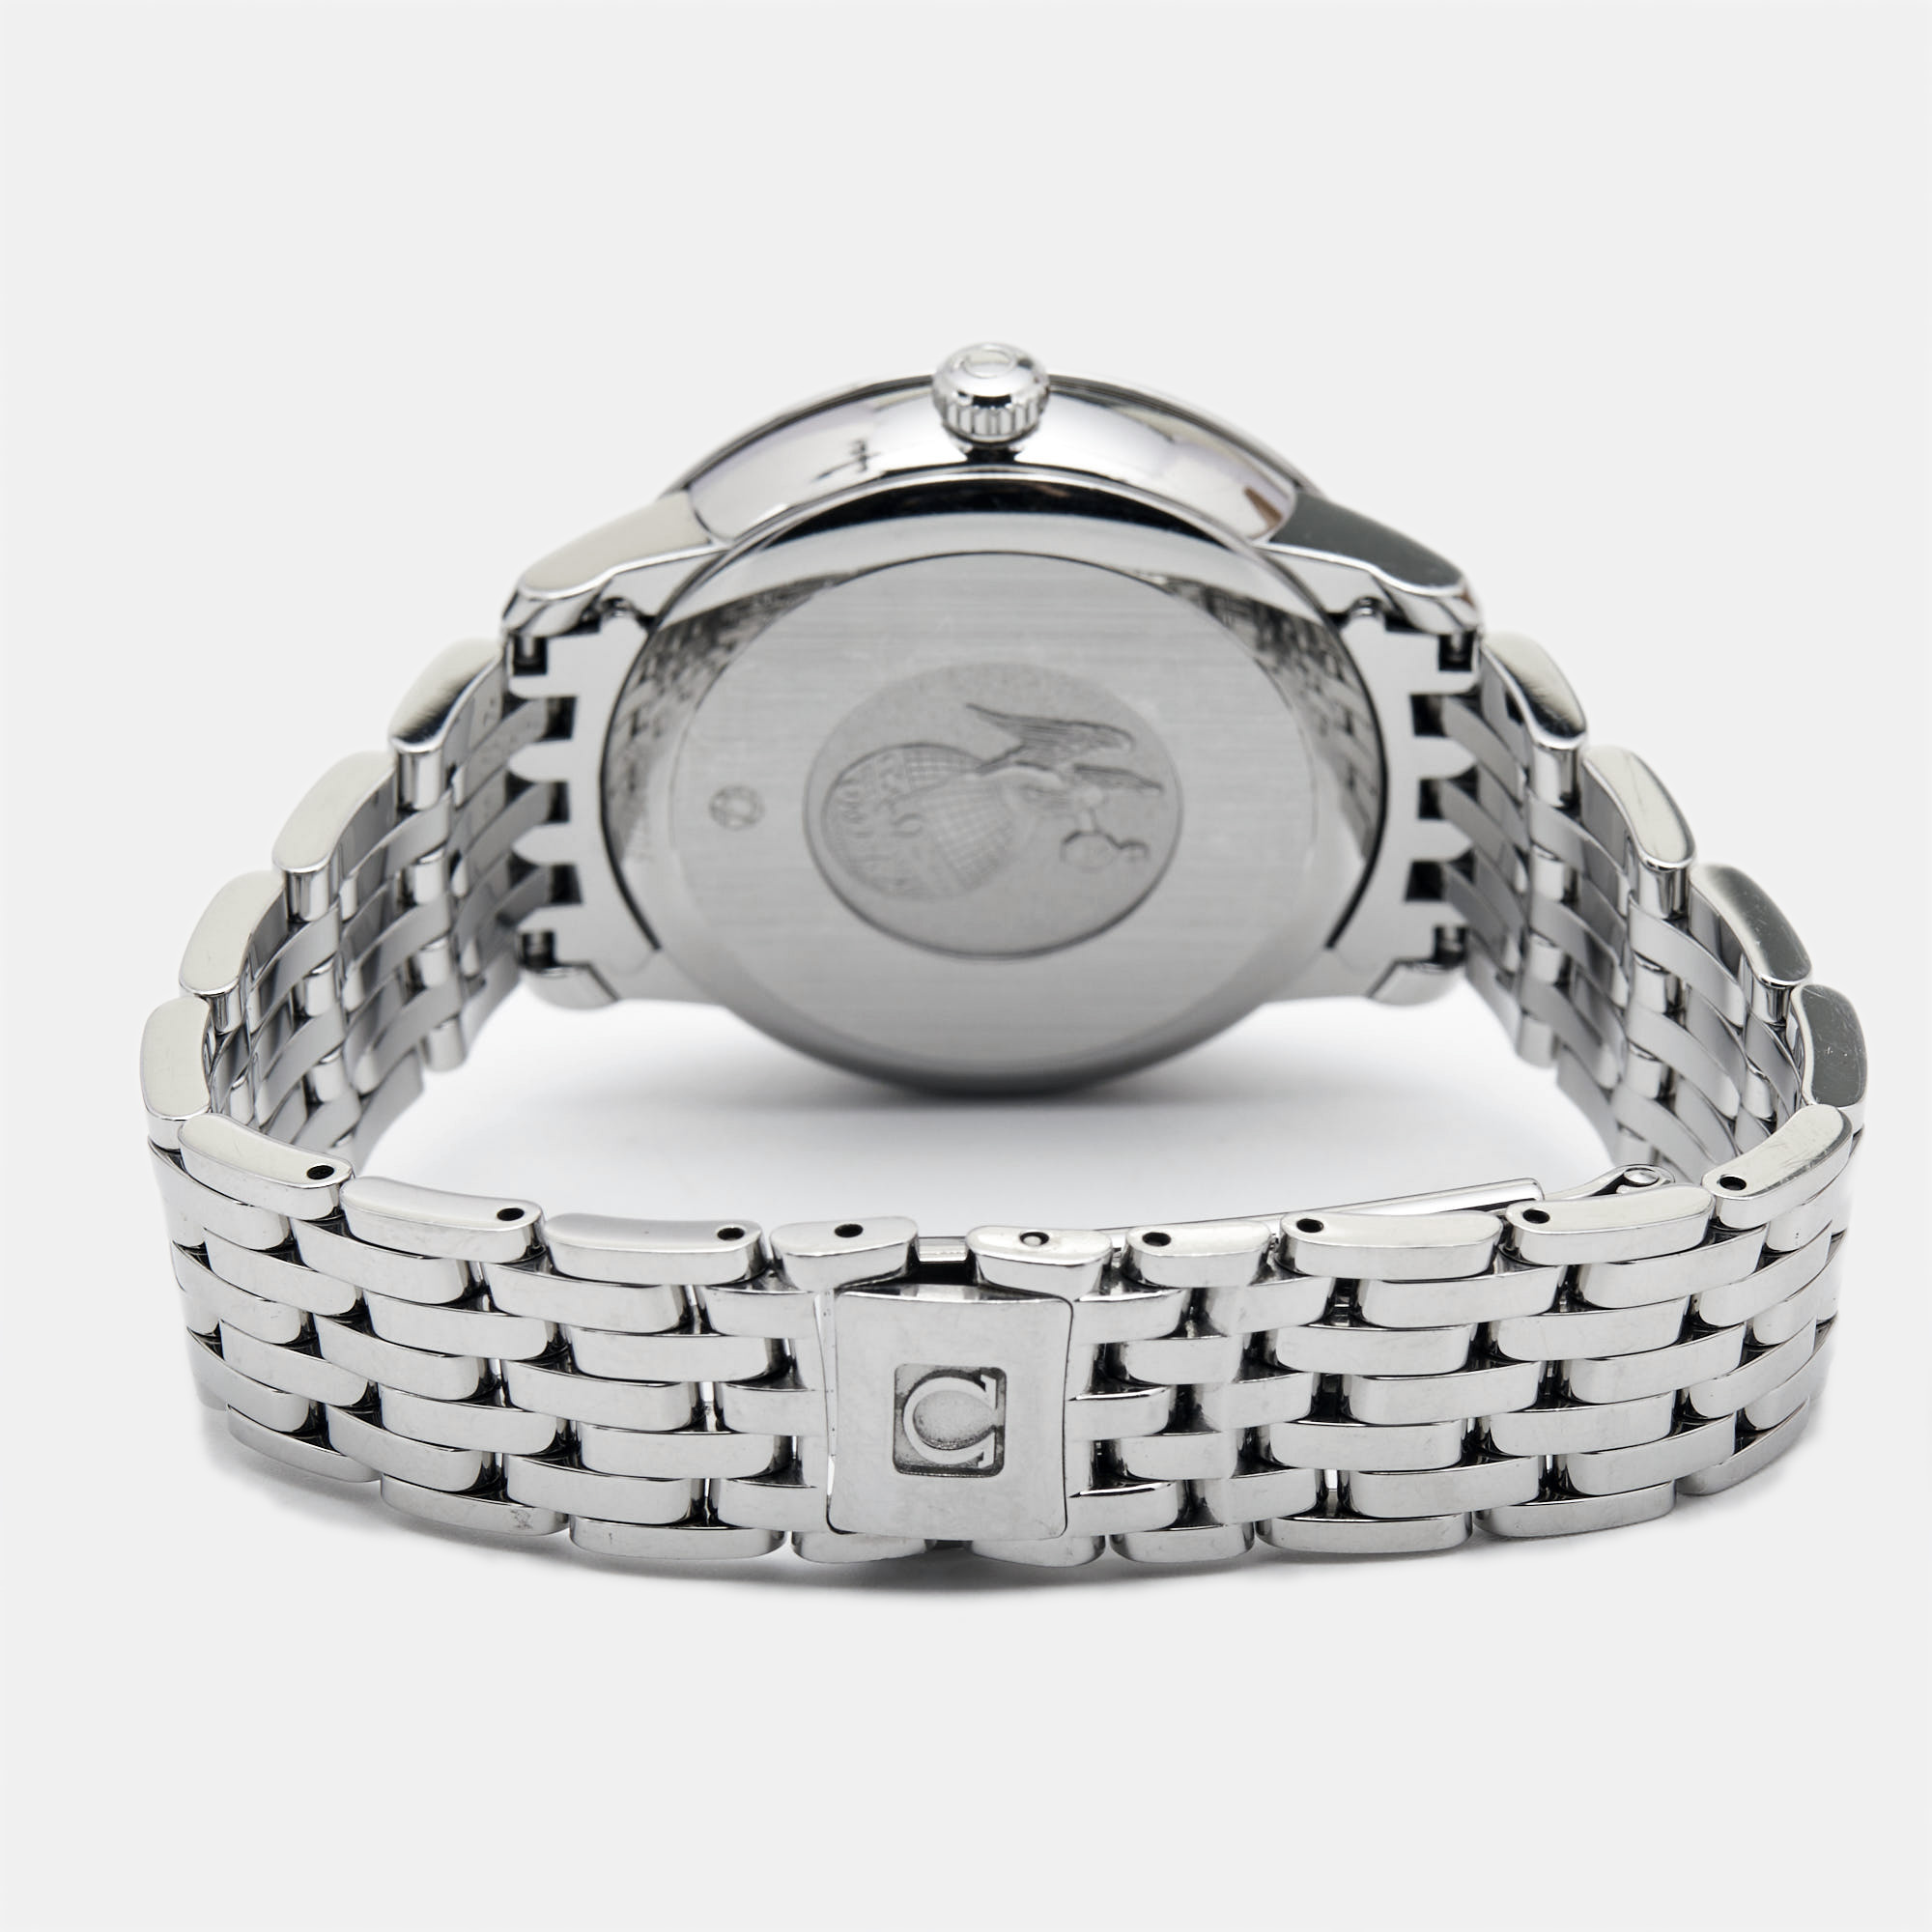 Omega Mother Of Pearl Stainless Steel Diamond De Ville 424.10.33.20.55.002 Women's Wristwatch 32.7 Mm